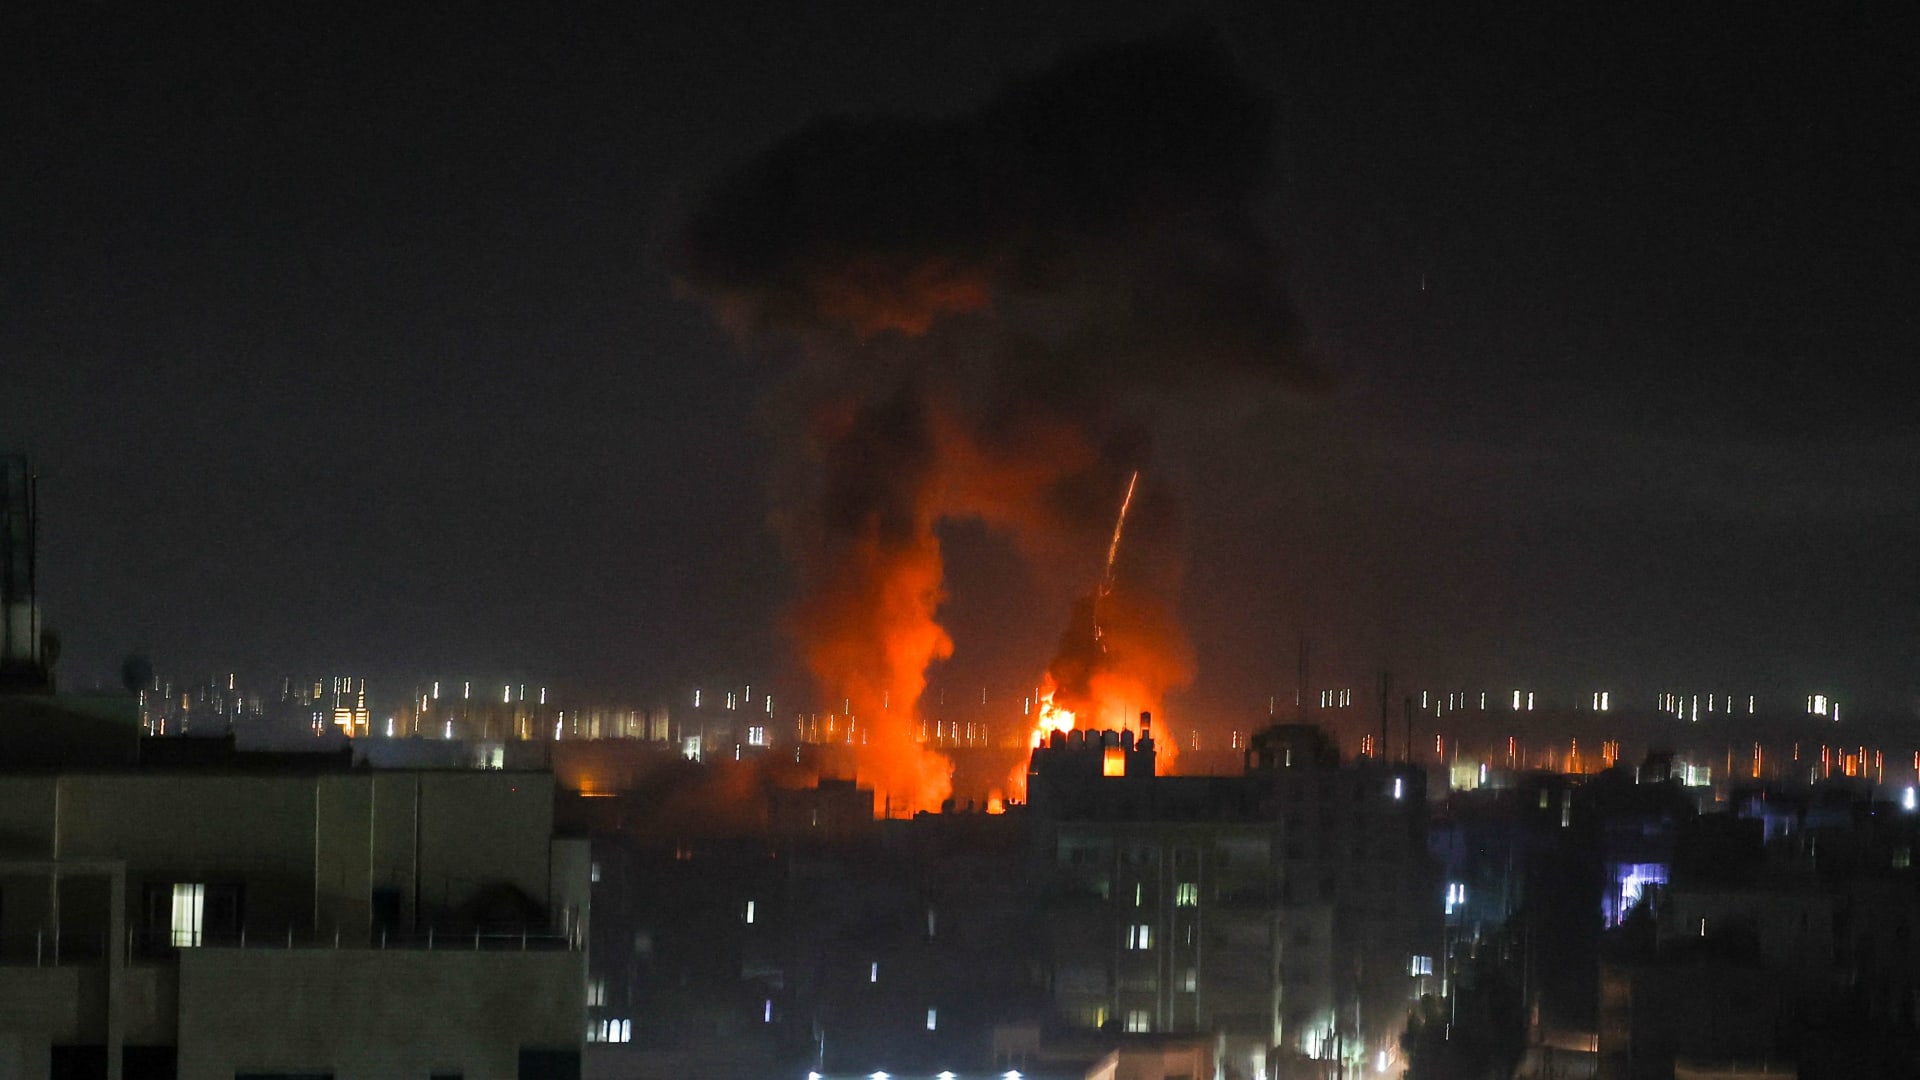 غارات جوية إسرائيلية على غزة - الأربعاء 16 يونيو 2021